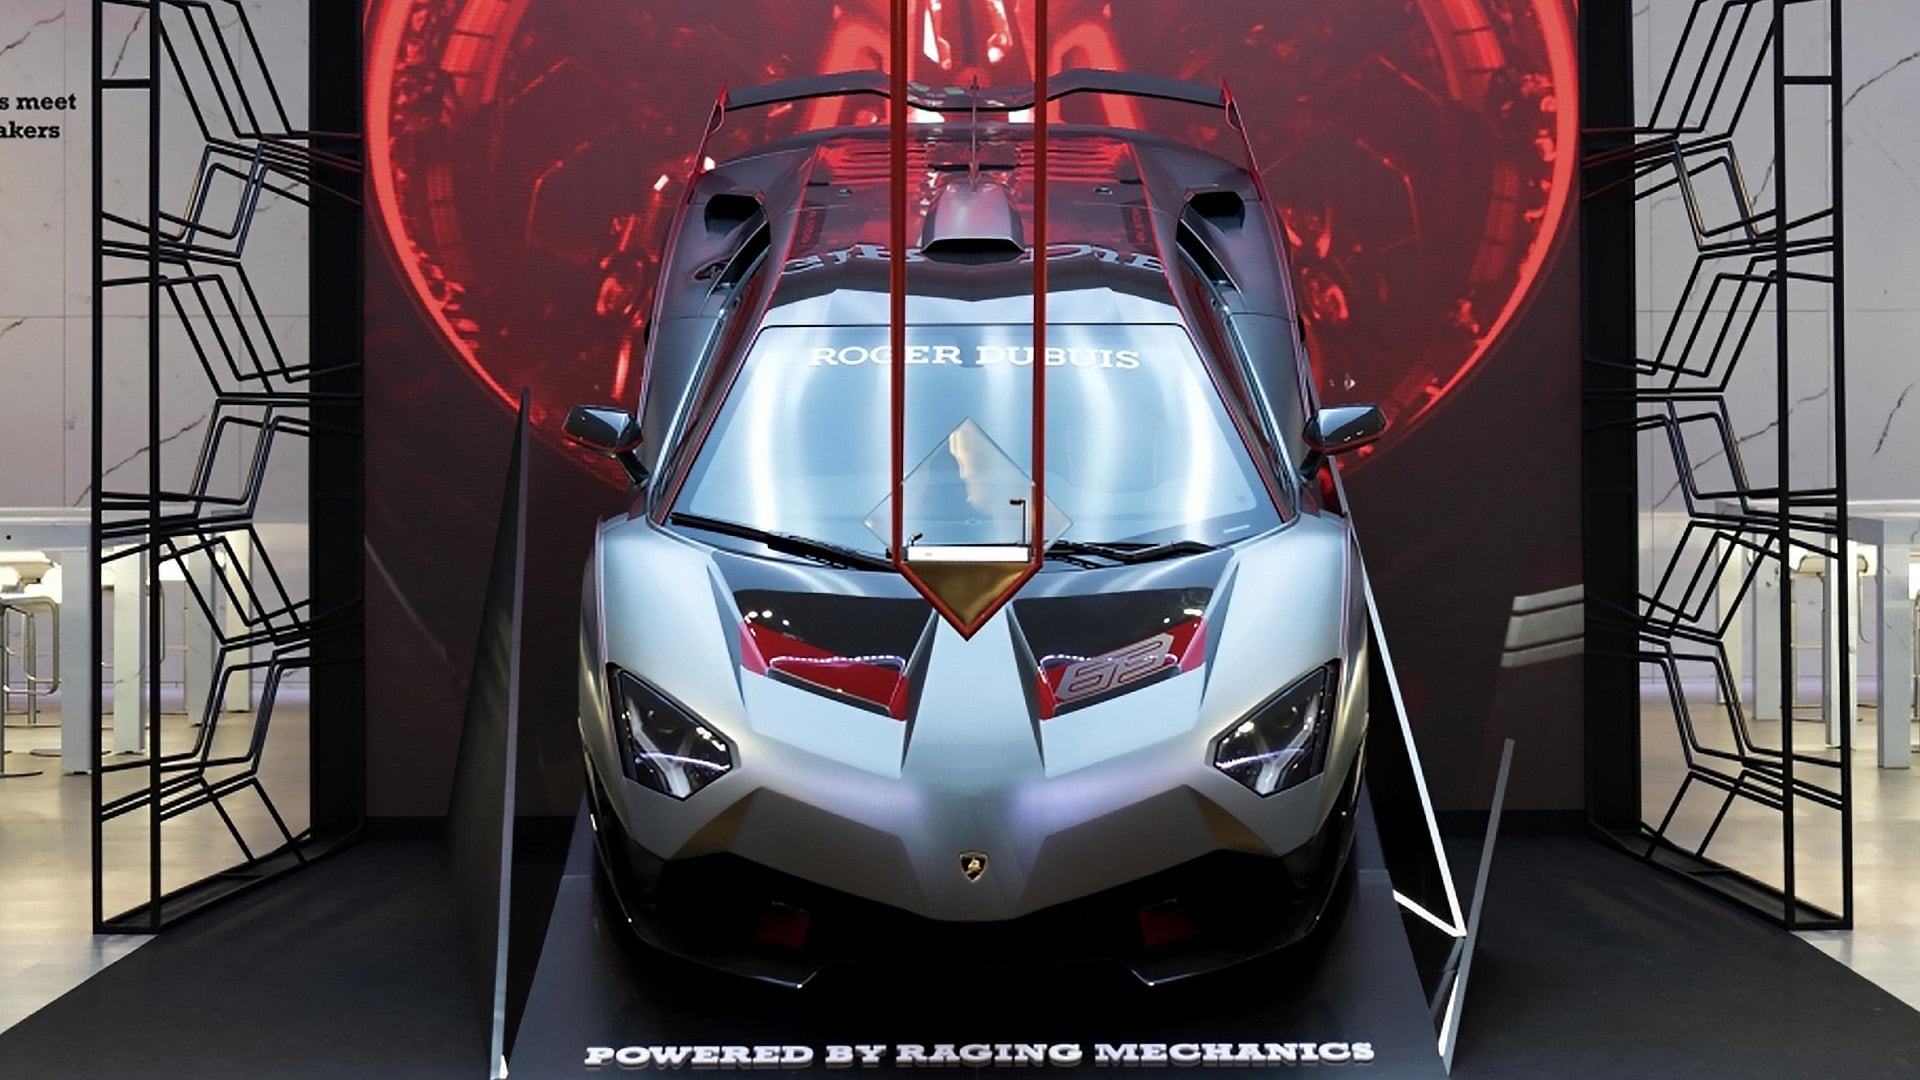 Roger Dubuis SIHH 2019 - Lamborghini